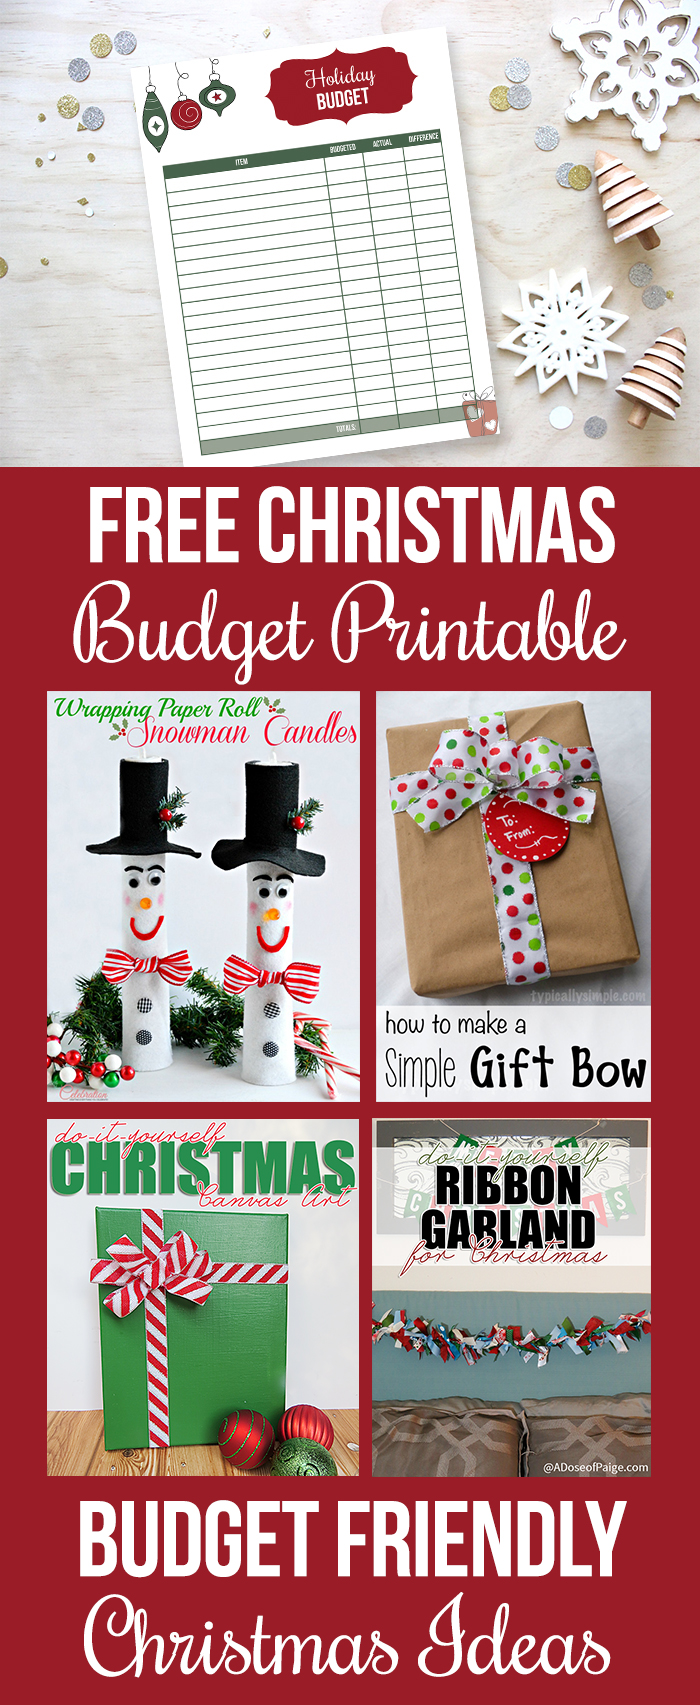 Free Christmas budget printable and frugal Christmas gift and decor ideas.